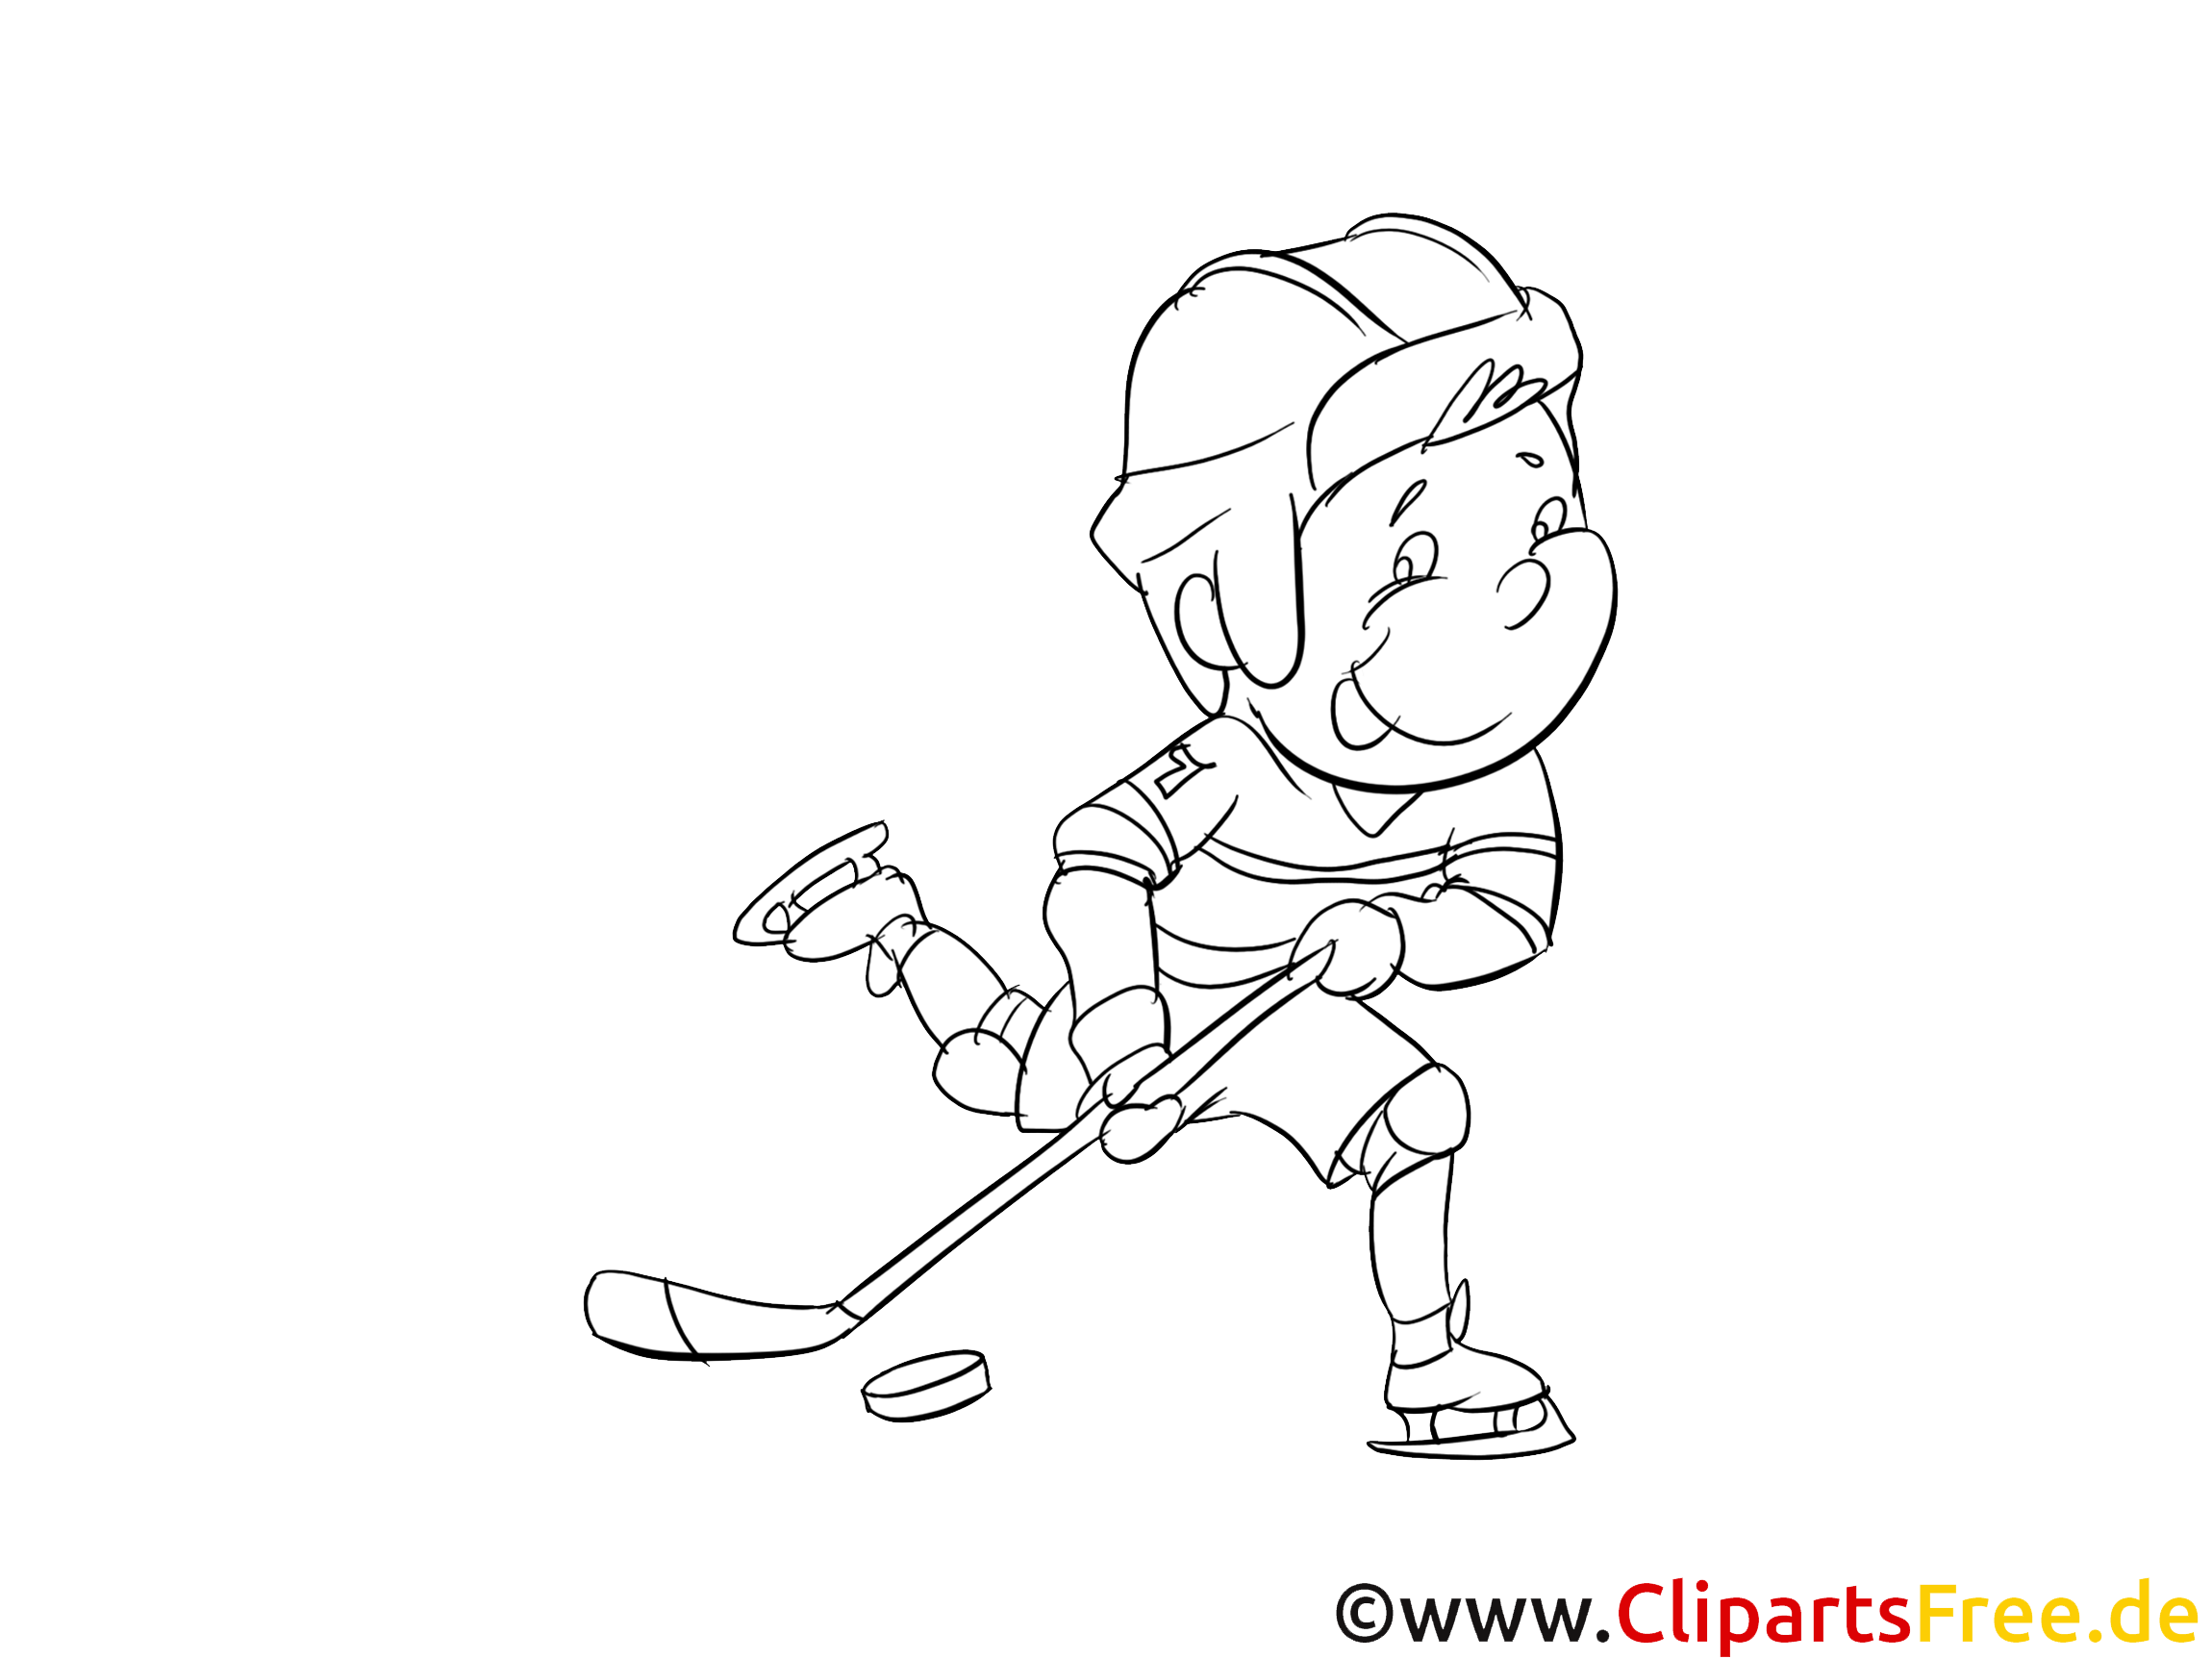 Sport d'hiver images – Hockey gratuits à imprimer